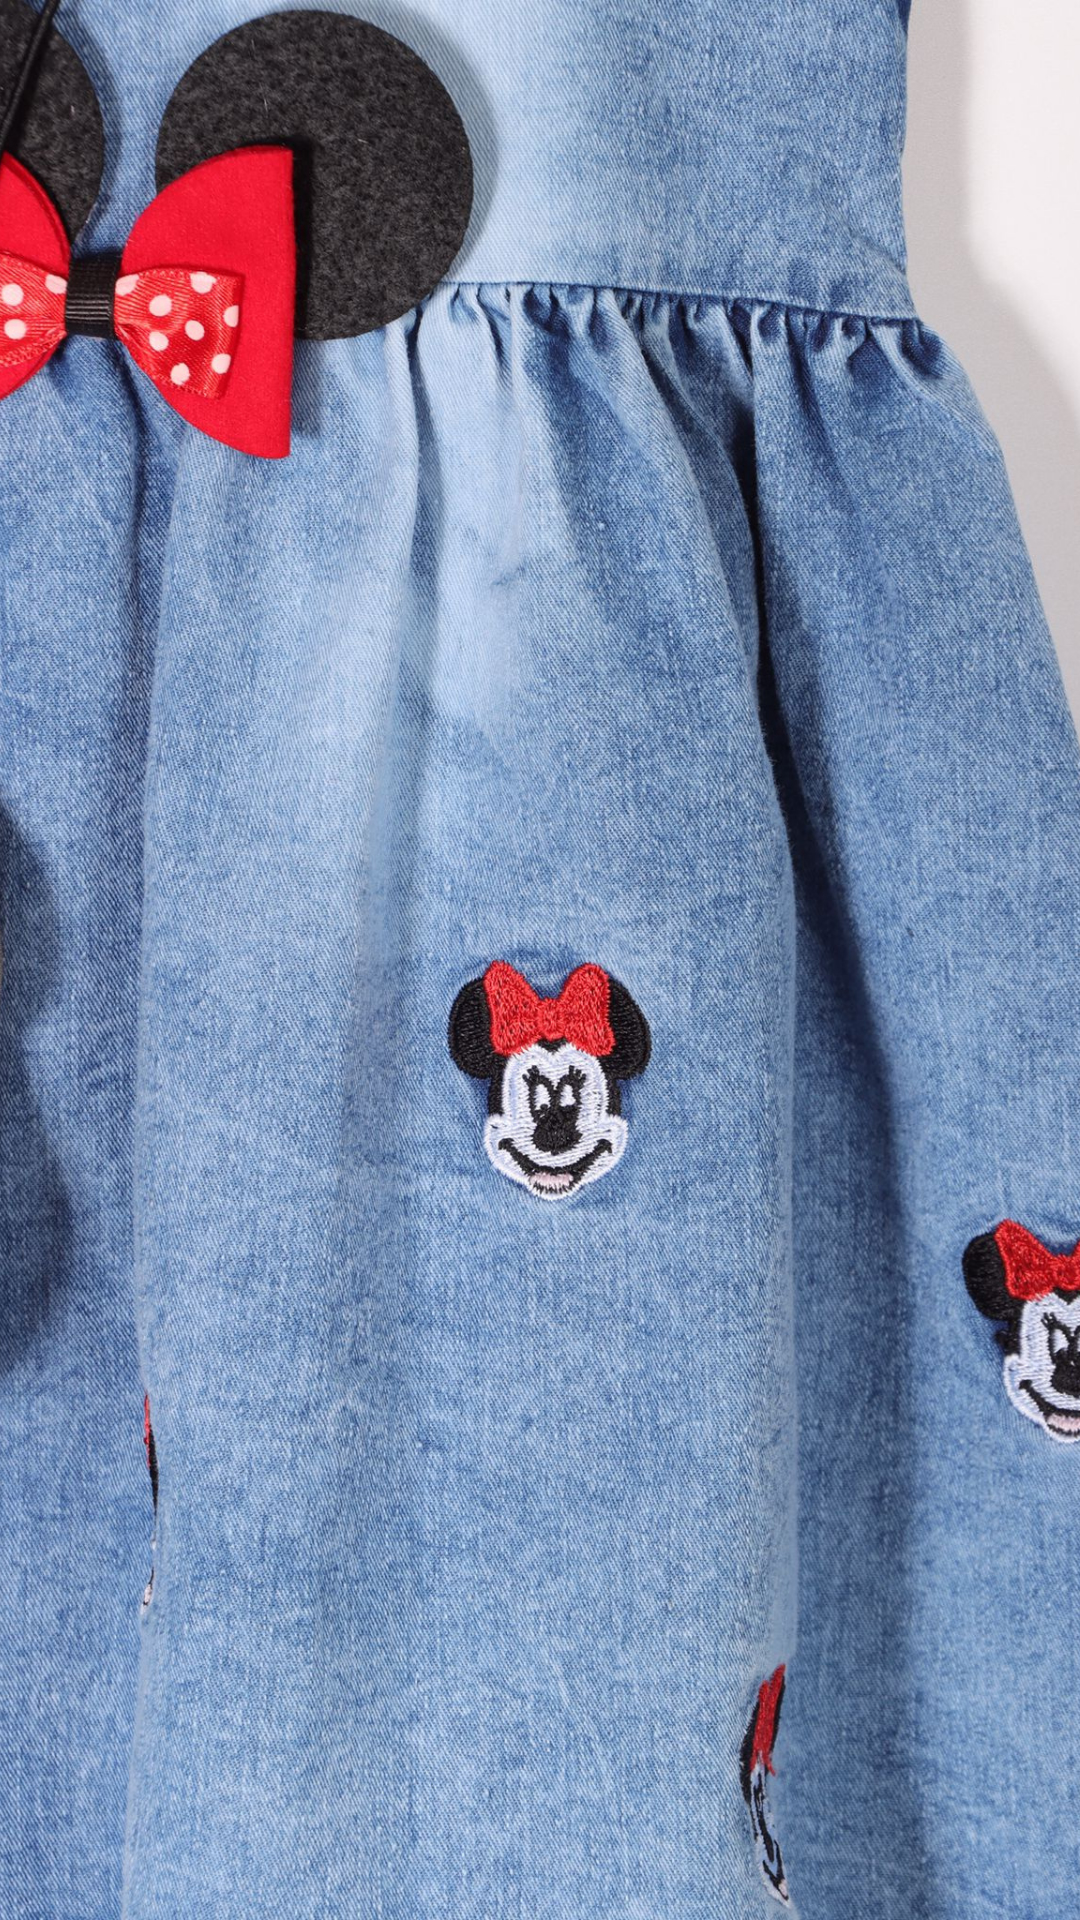 Hayalim Mickey Nakışlı Çantalı Kız Bebek Elbise Kot